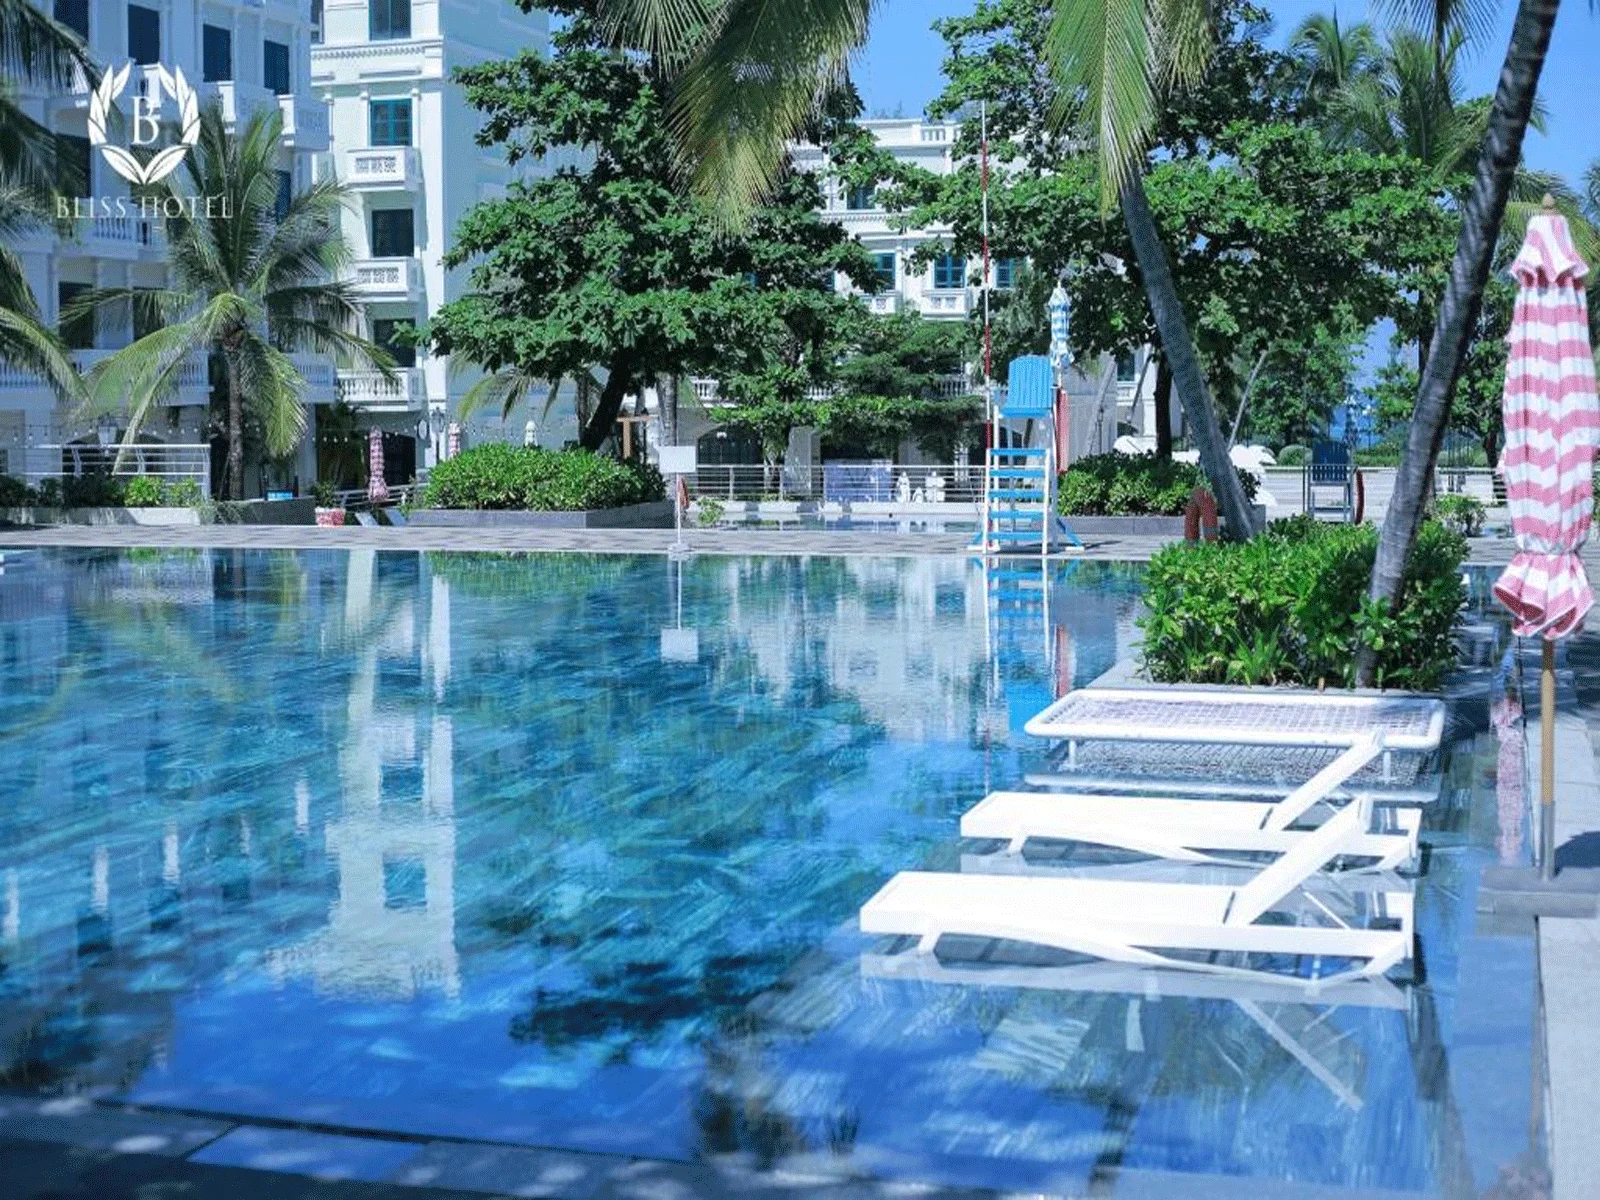 Khách sạn Bliss Hotel Phú Quốc